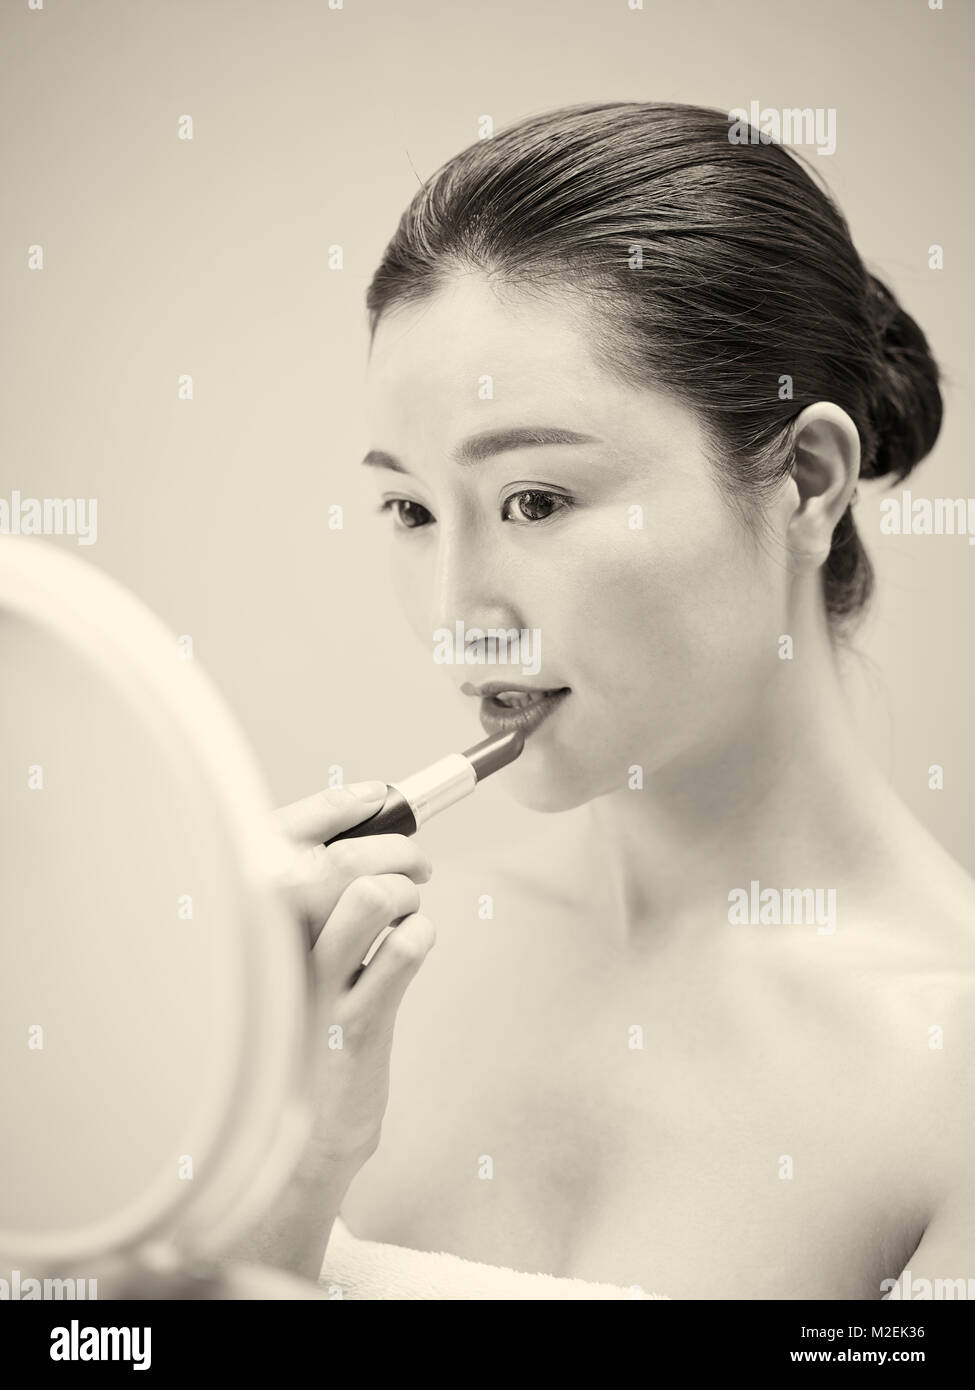 Schöne junge asiatische Frau im Spiegel zu betrachten, während die Lippen Lippenstift, Schwarz und Weiß, retro style. Stockfoto